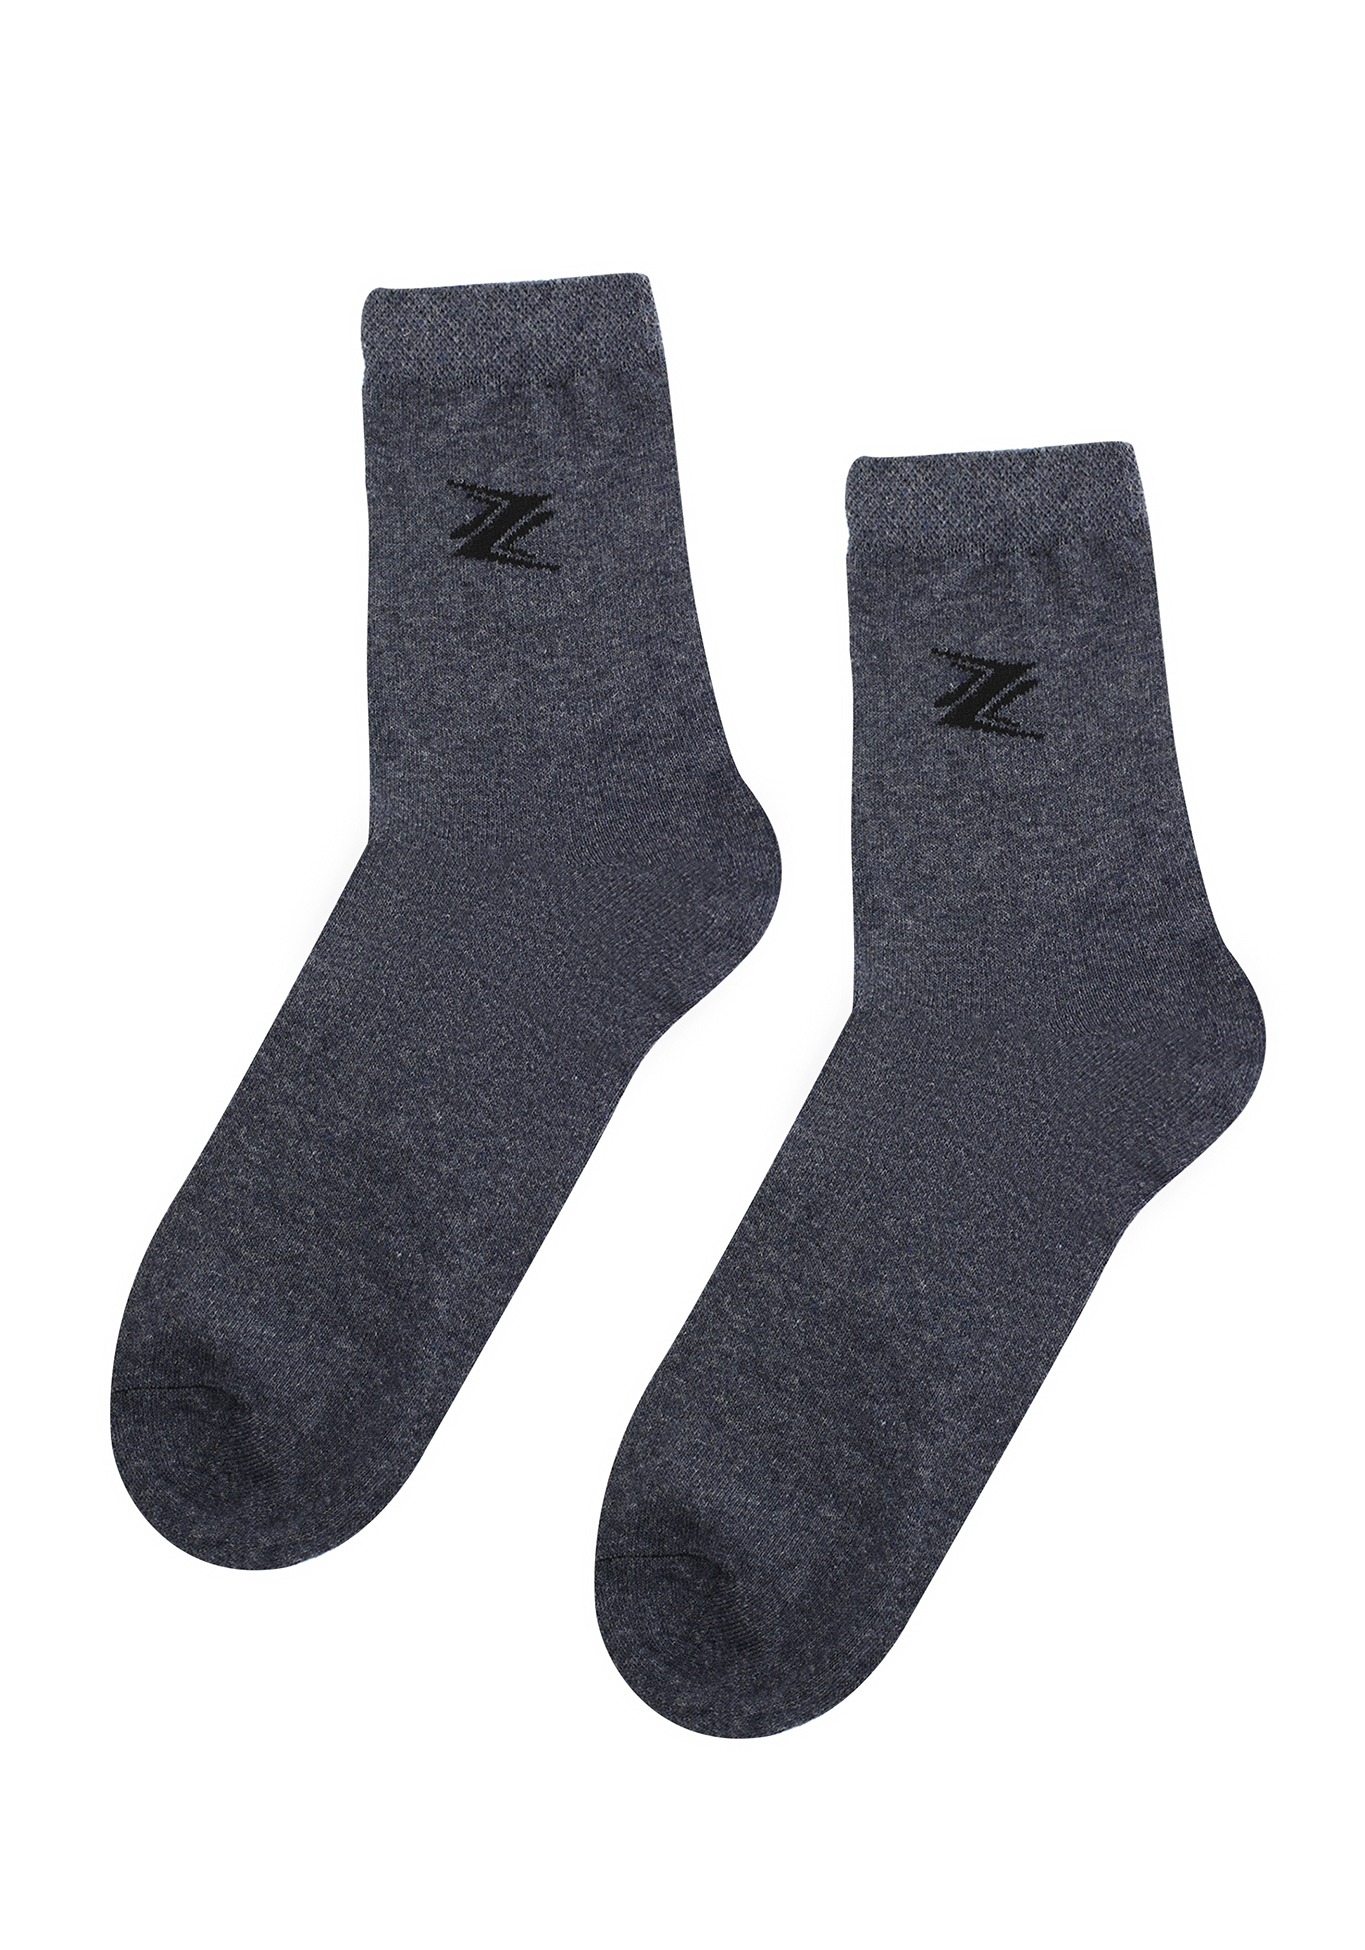 Комплект мужских носков с рисунком, 6 пар, цвет в ассортименте, размер 27 - фото 2